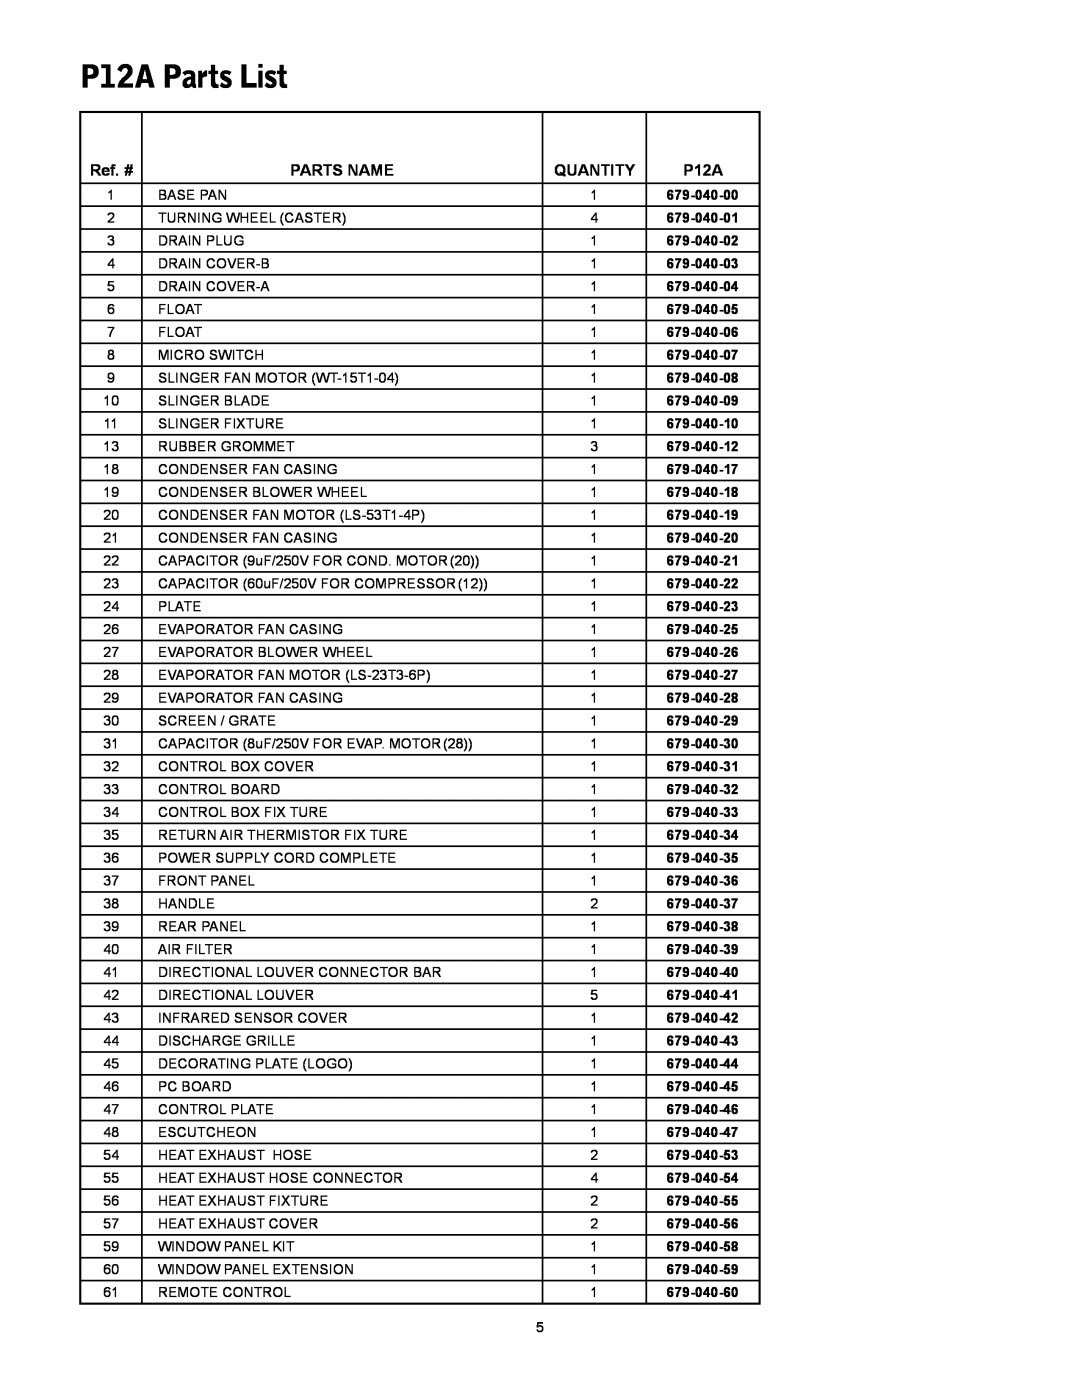 Friedrich manual P12A Parts List, Ref. #, Parts Name, Quantity 